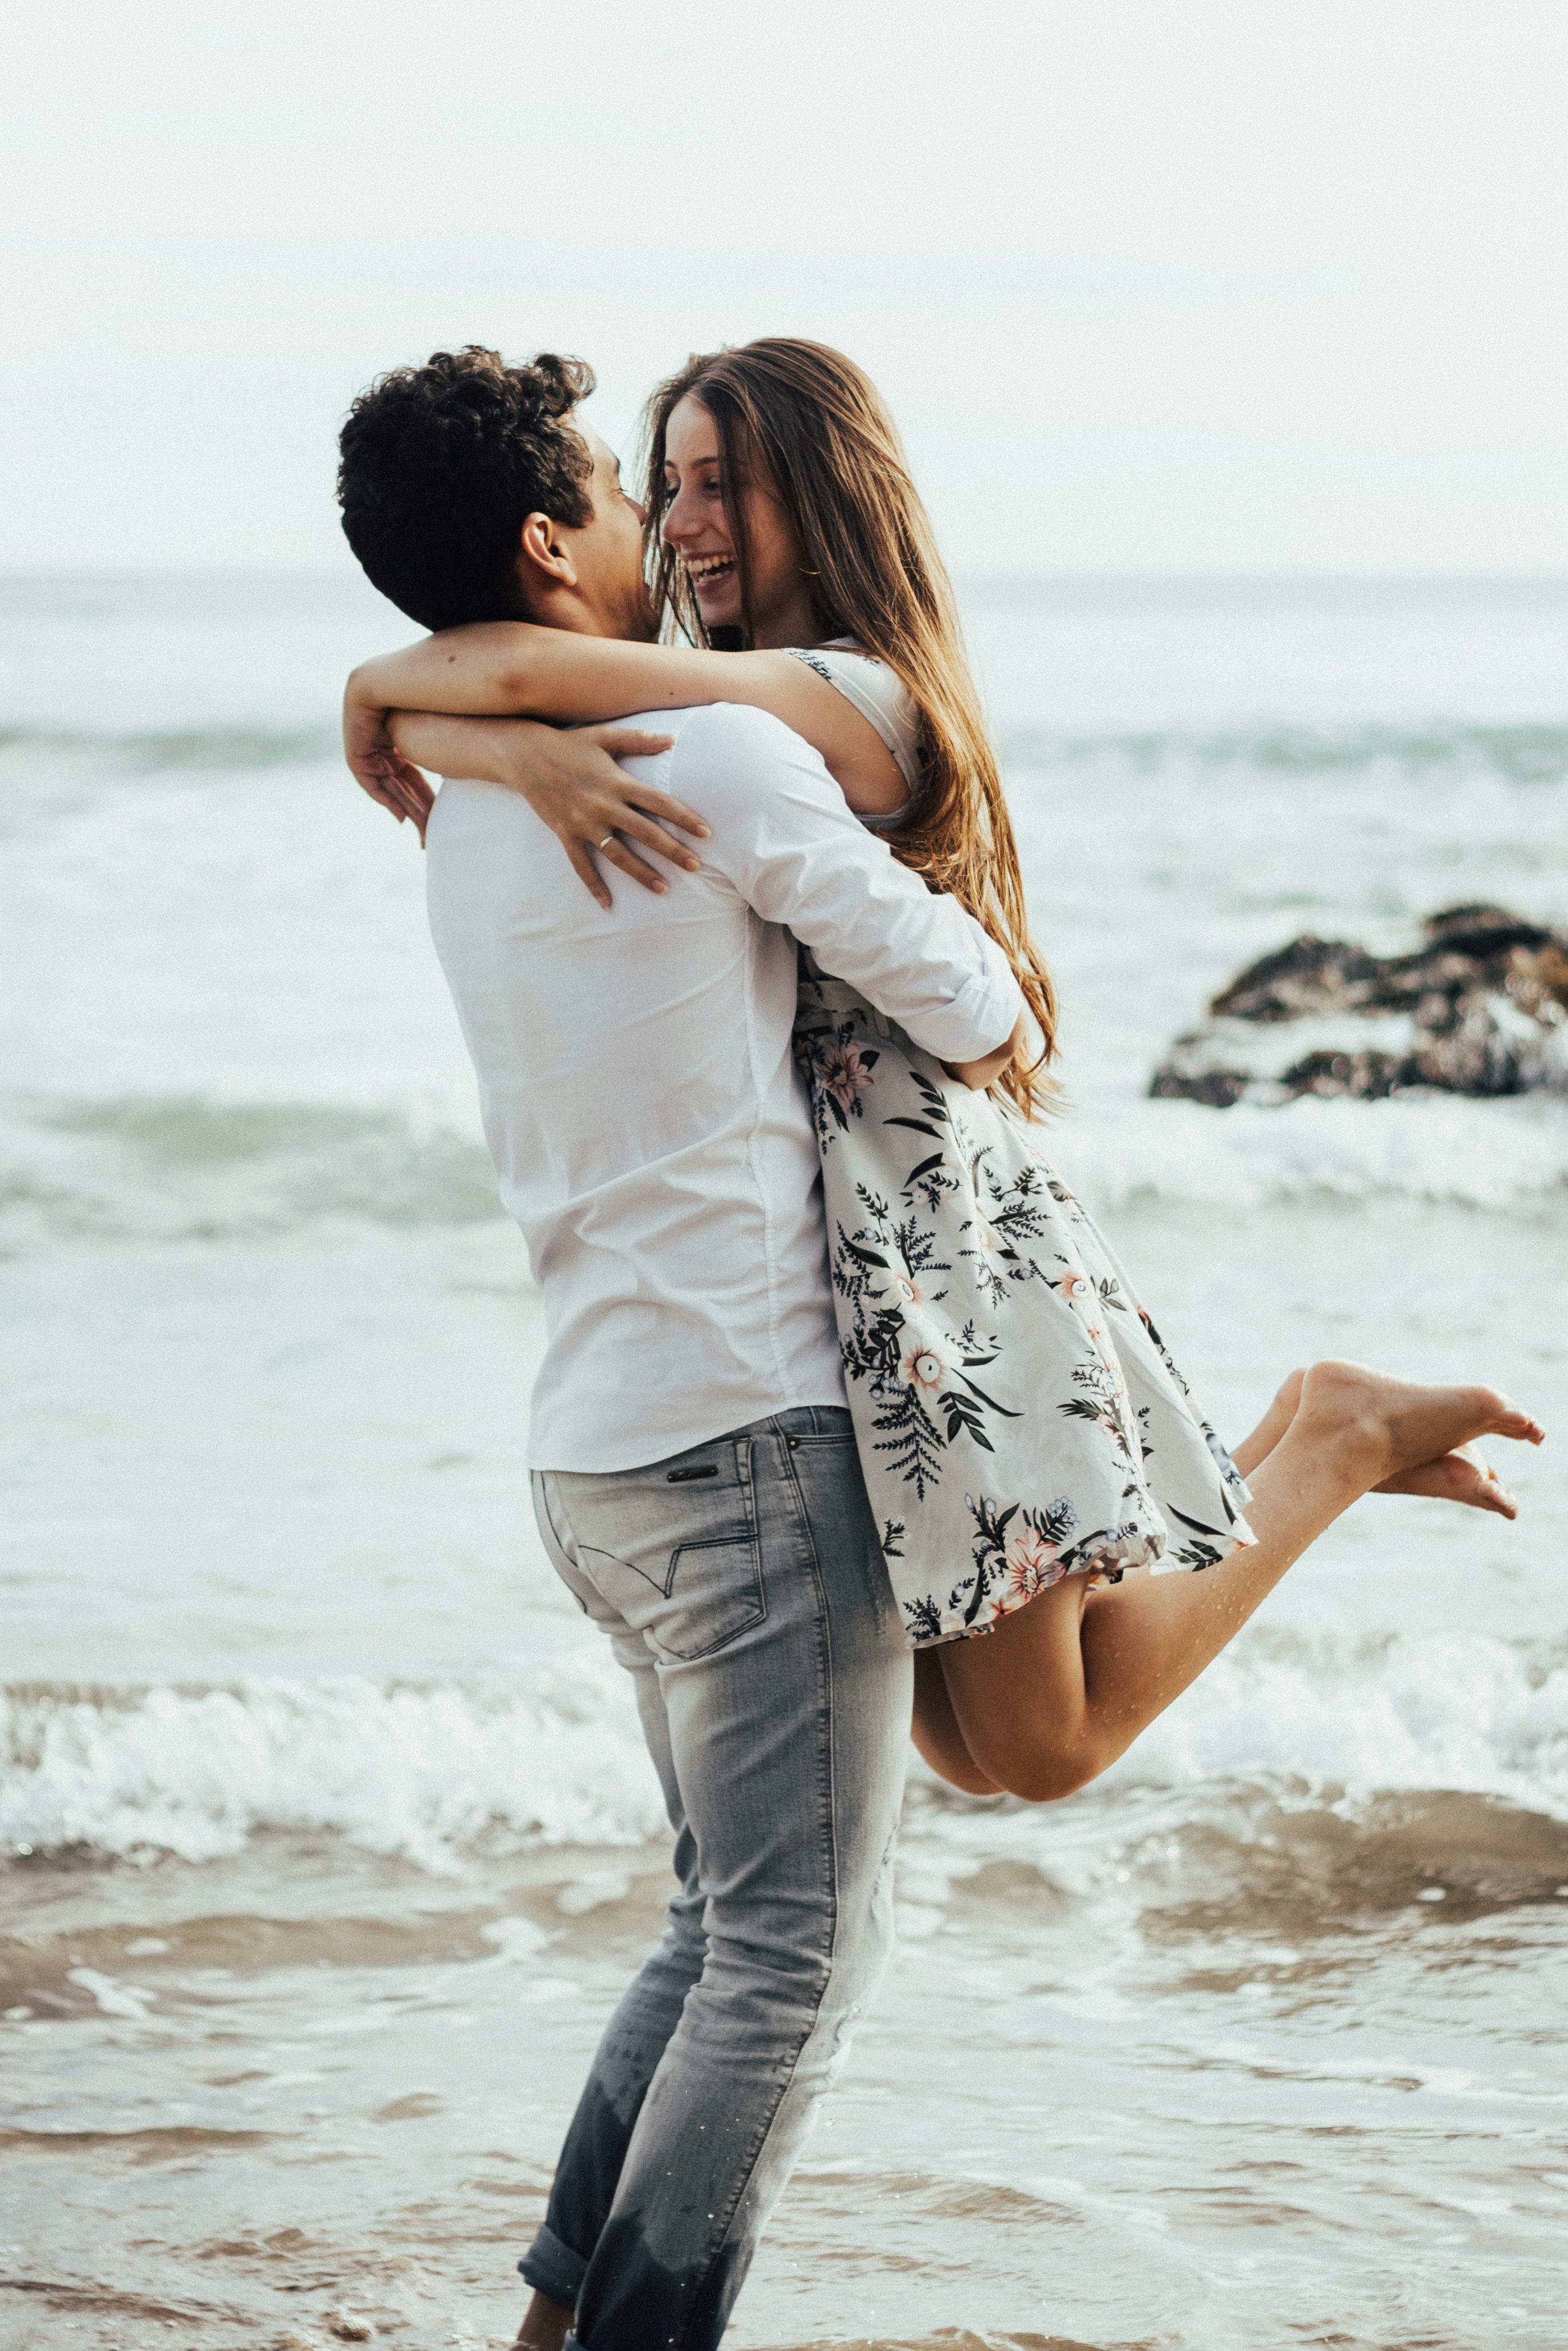 Un couple heureux s'embrassant à la plage | Source : Pexels